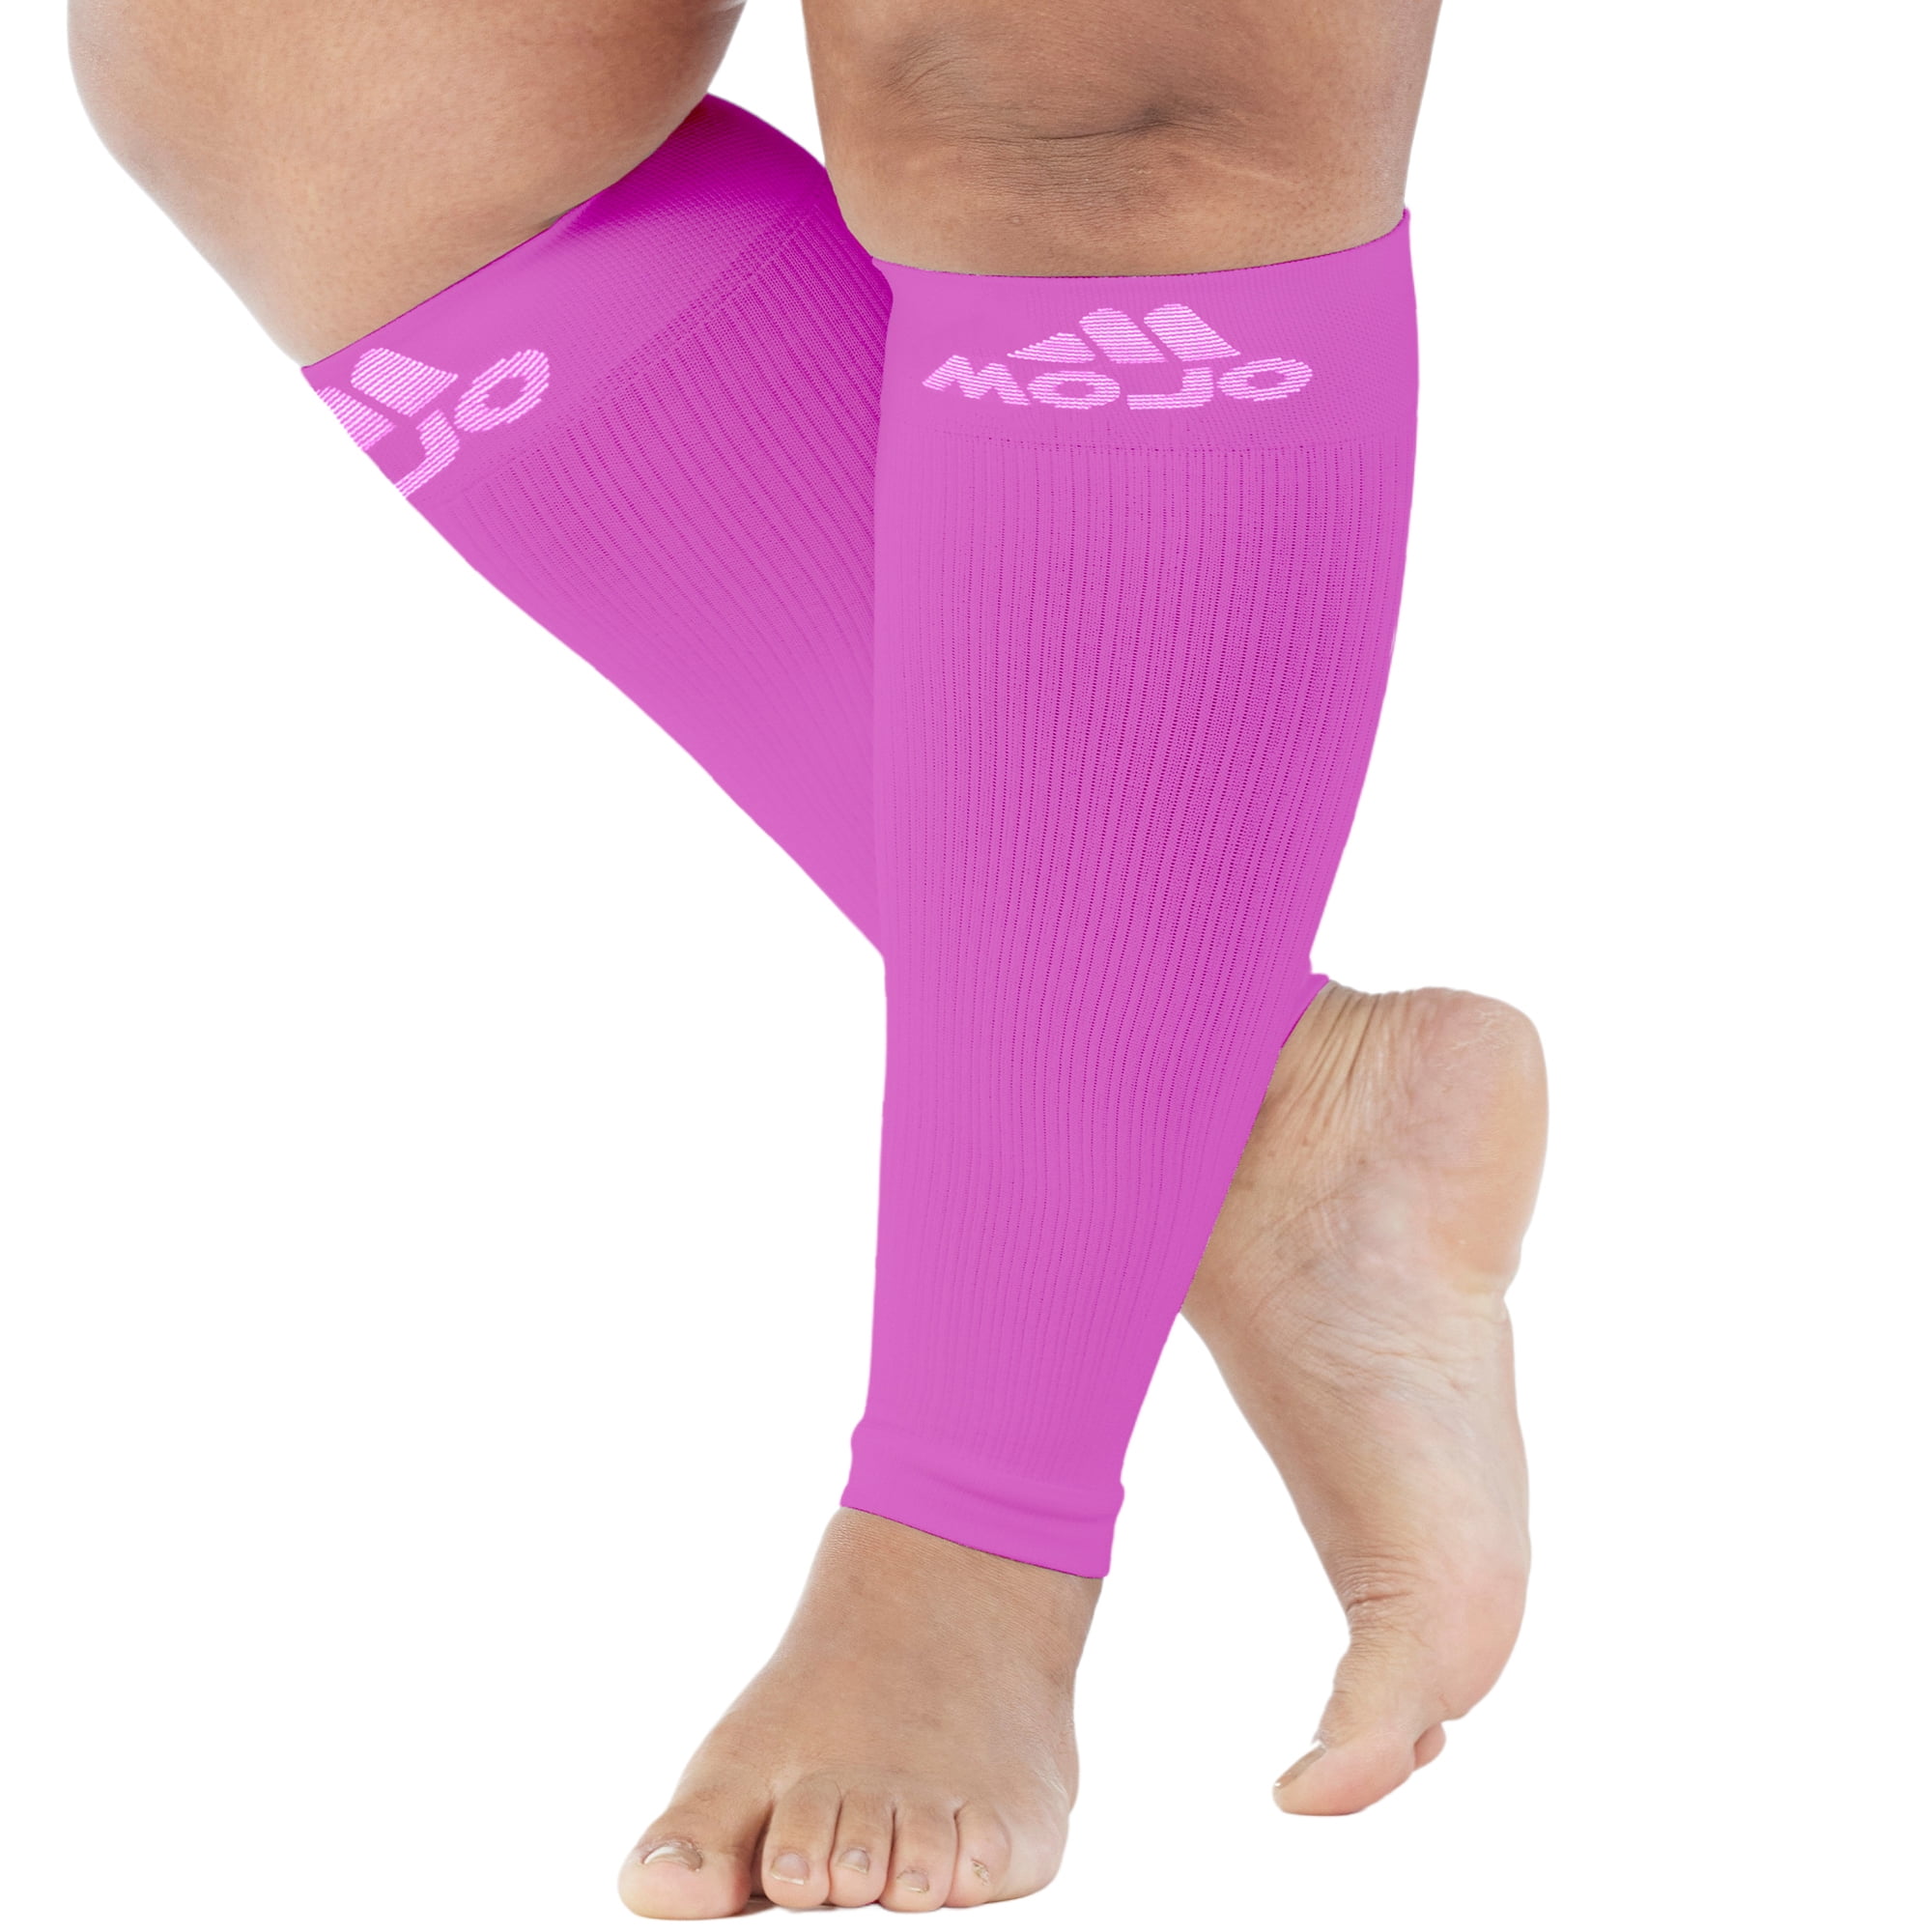 Plus Size Calf Sleeve Men & Women 20-30mmHg - Pink, - Walmart.com